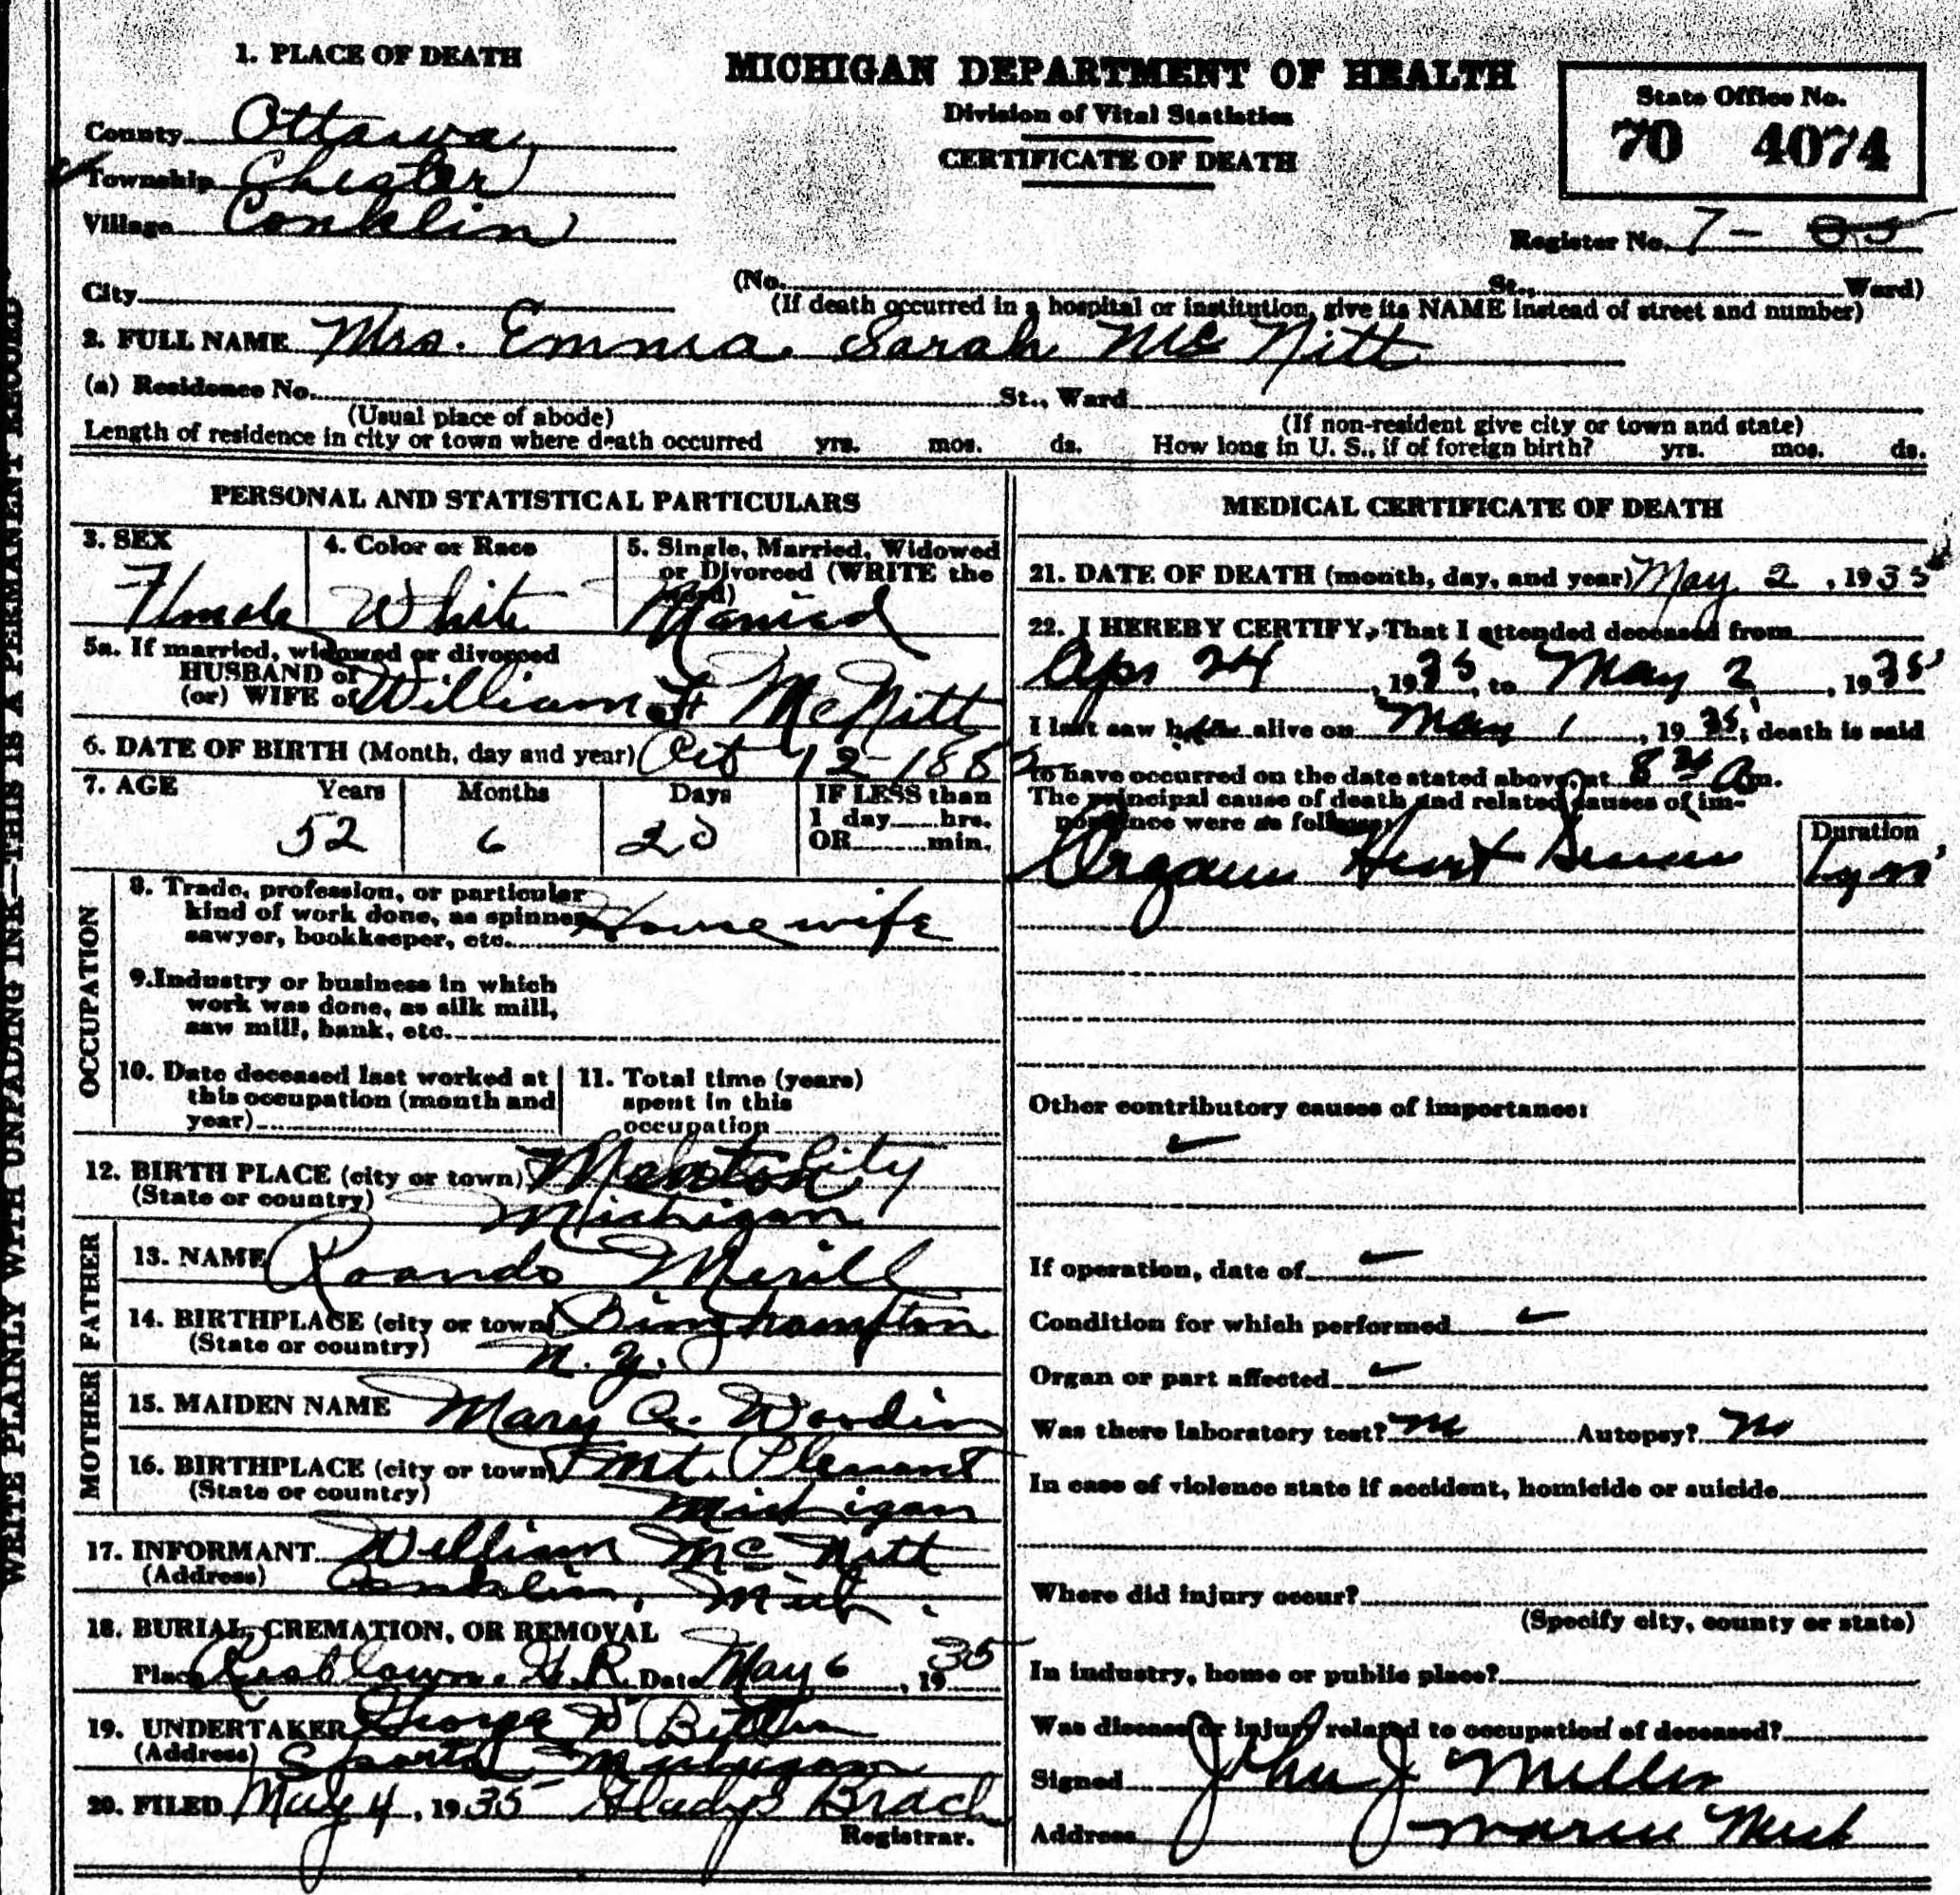 Emma McNitt's death certificate